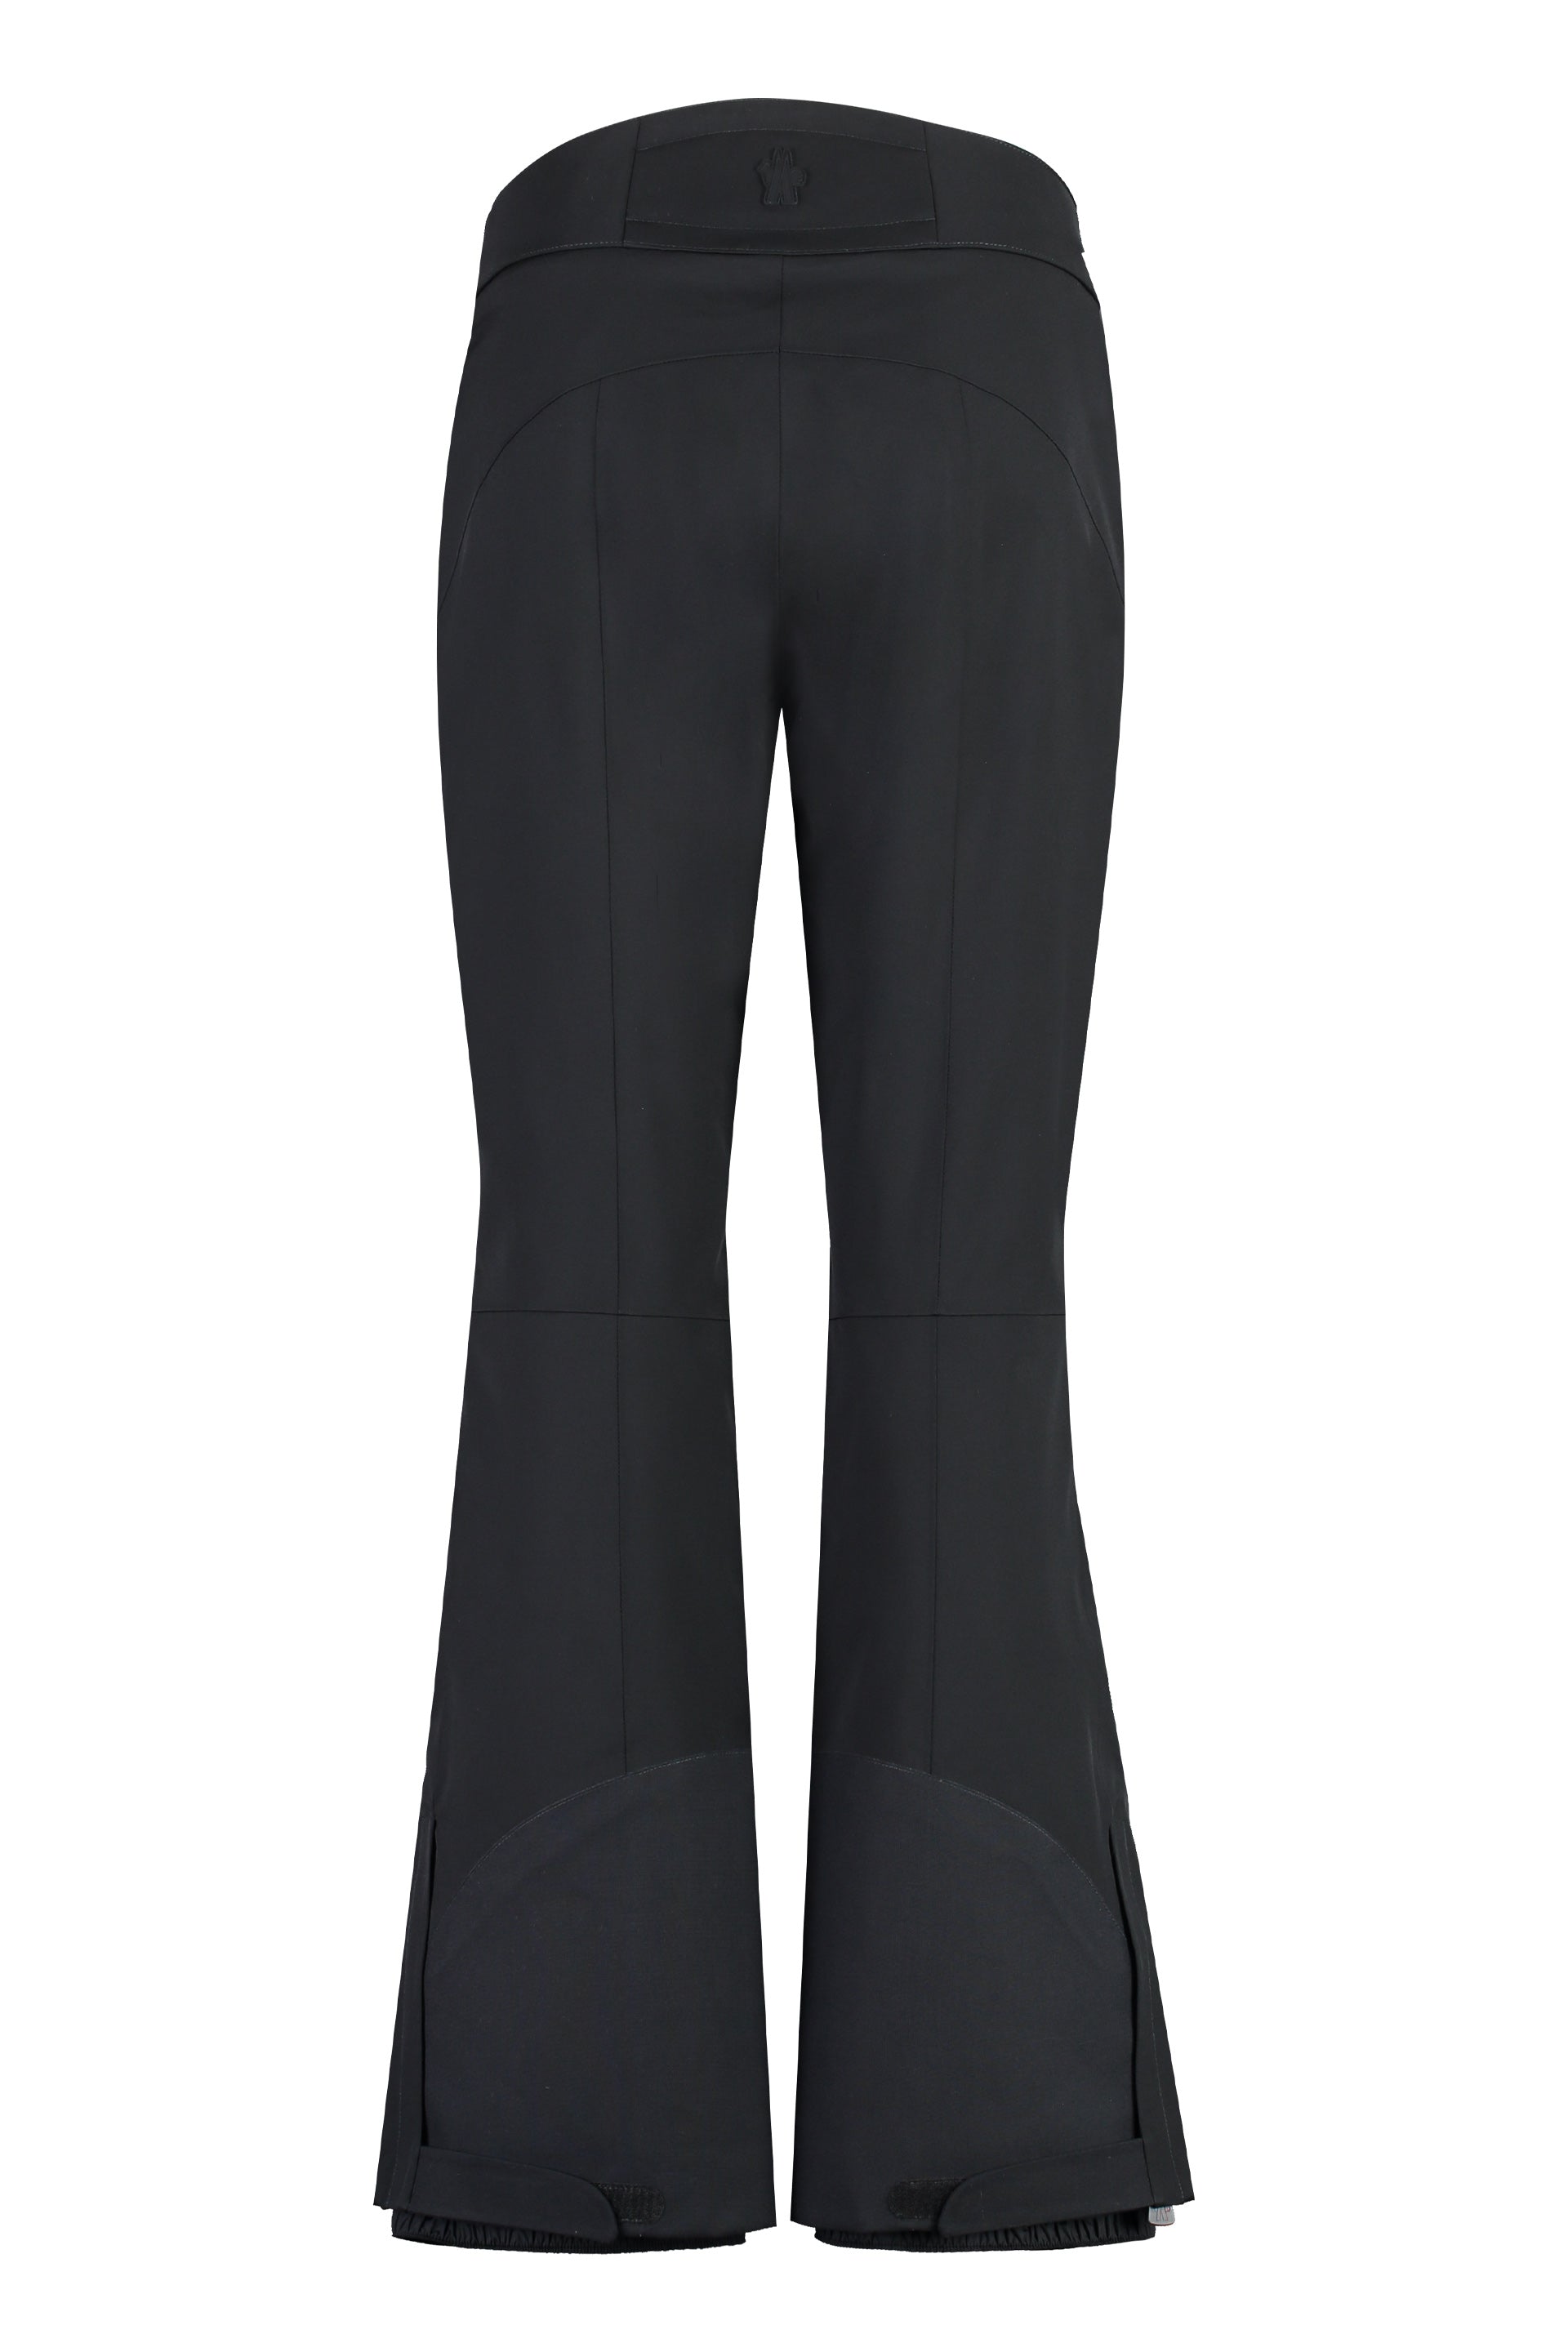 Shop Moncler Black Technical Fabric Pants For Women